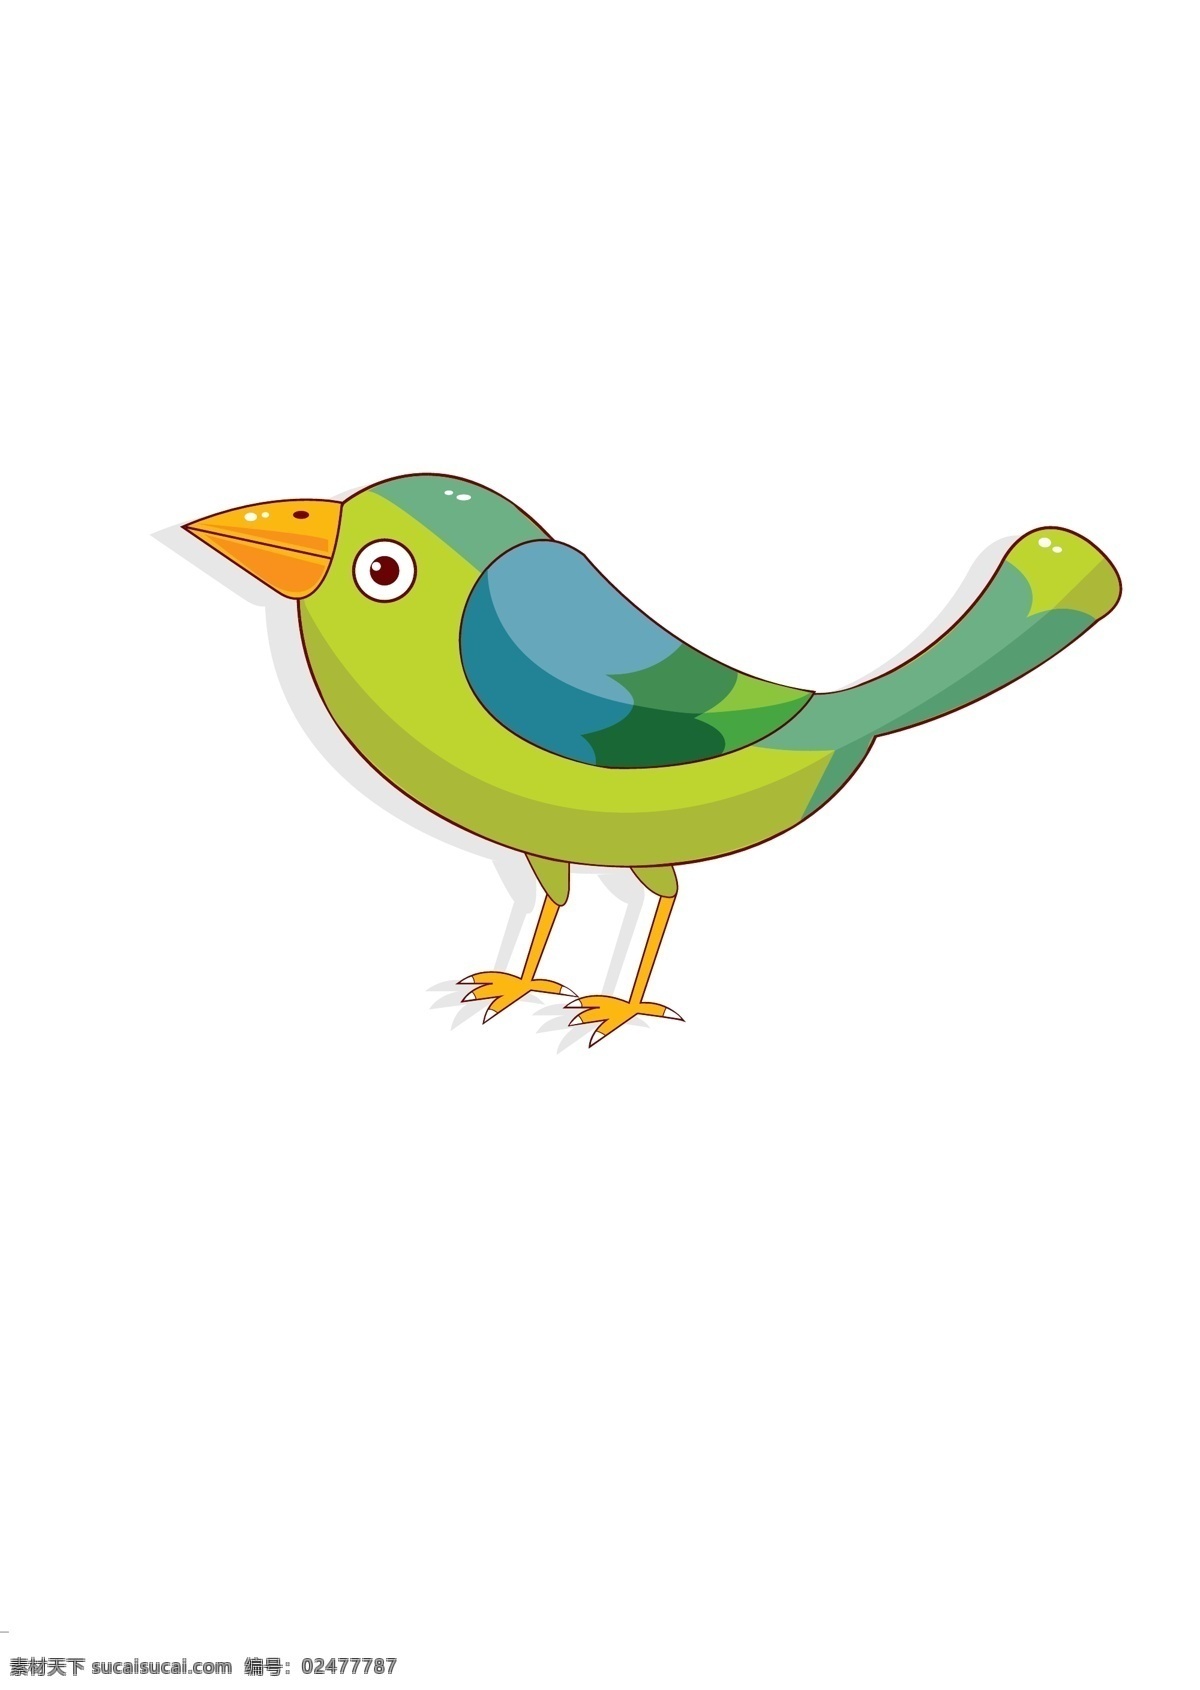 创意小鸟插画 鸟类 飞行 小鸟 小动物 卡通插画 动漫动画